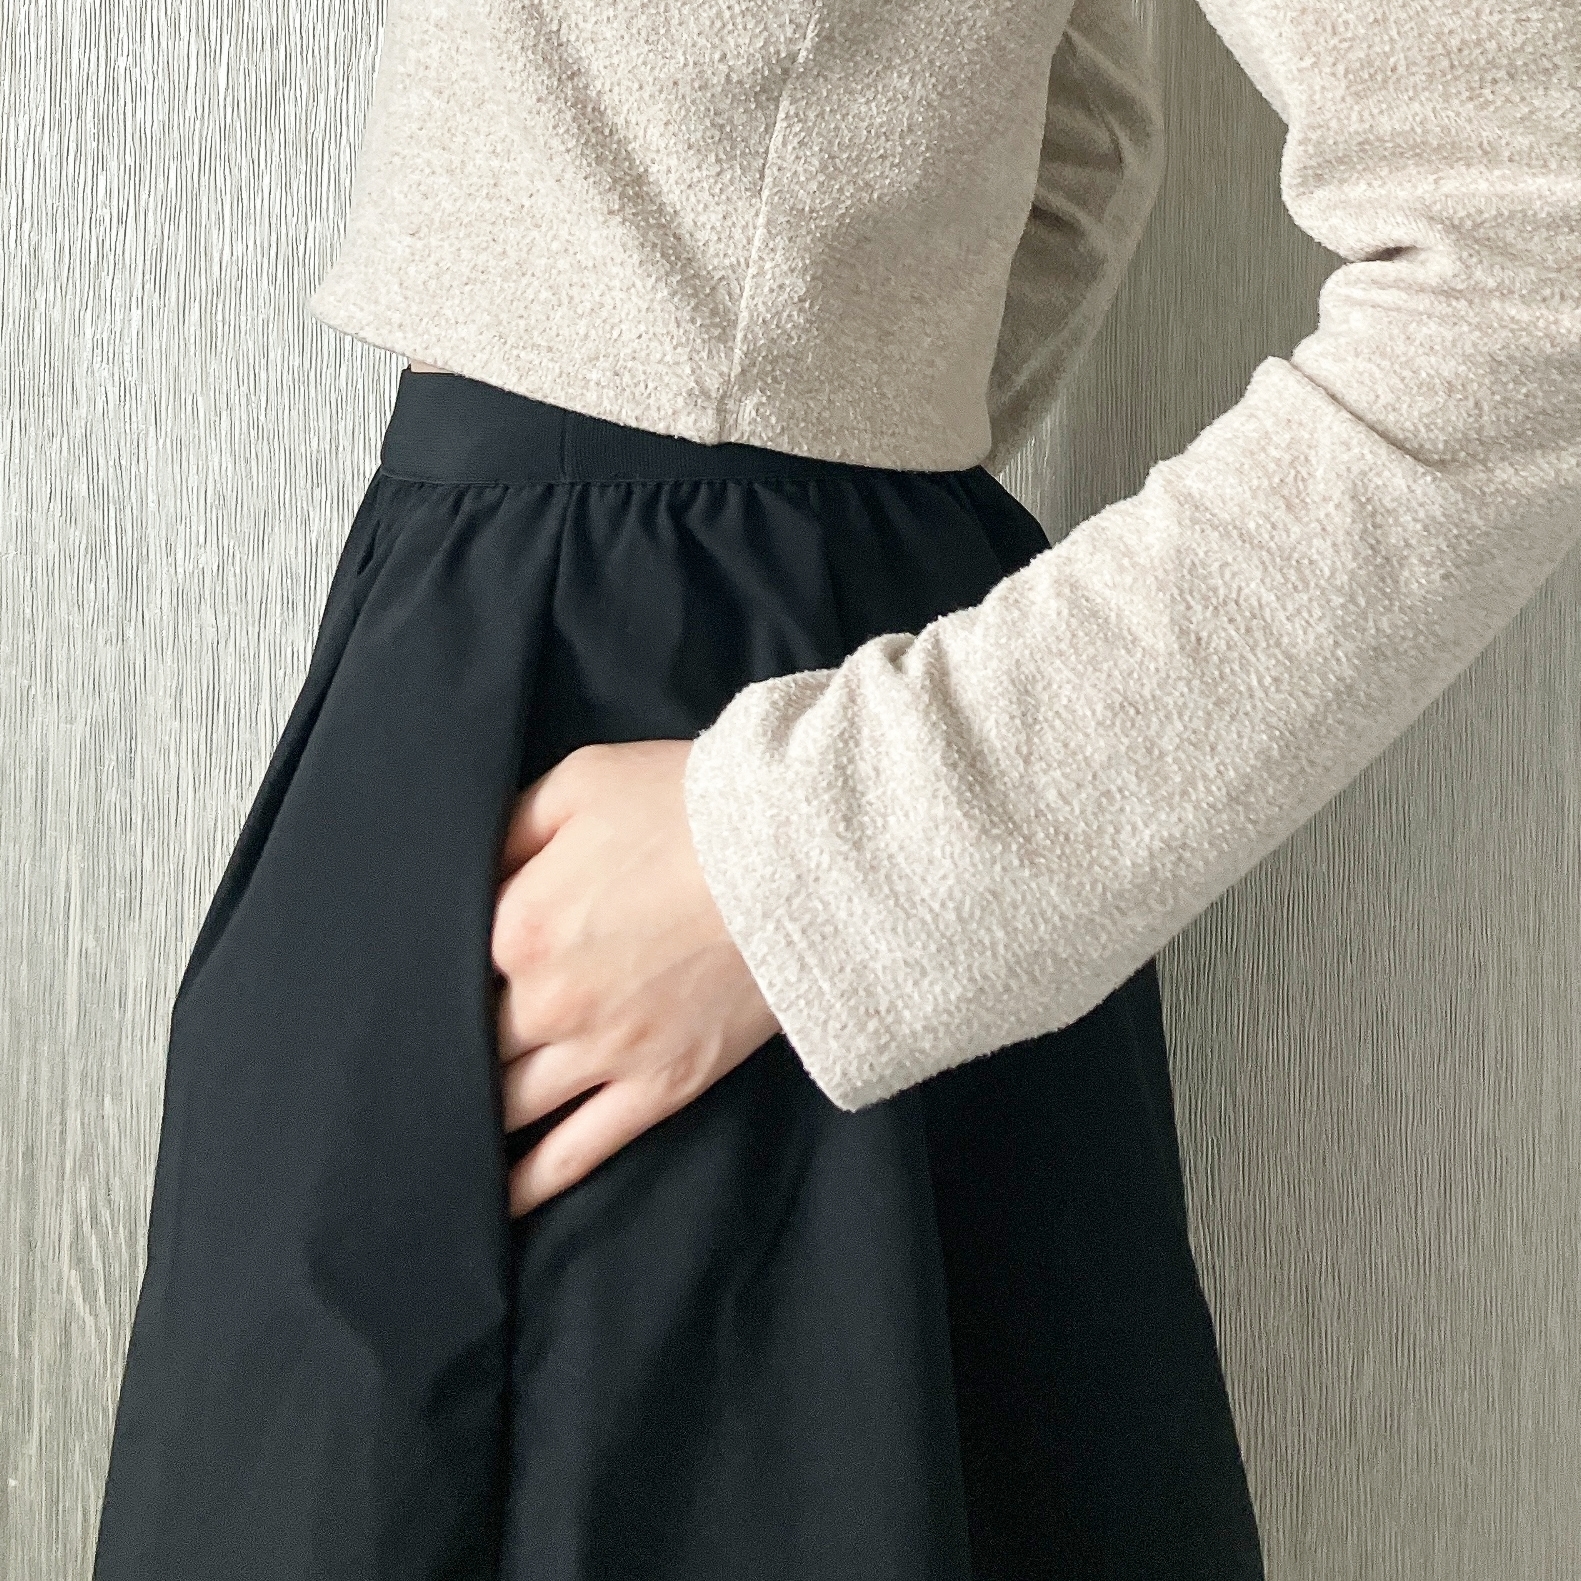 UNIQLO（ユニクロ）のおすすめスカート「ボリュームロングスカート（丈短め79～83cm）」